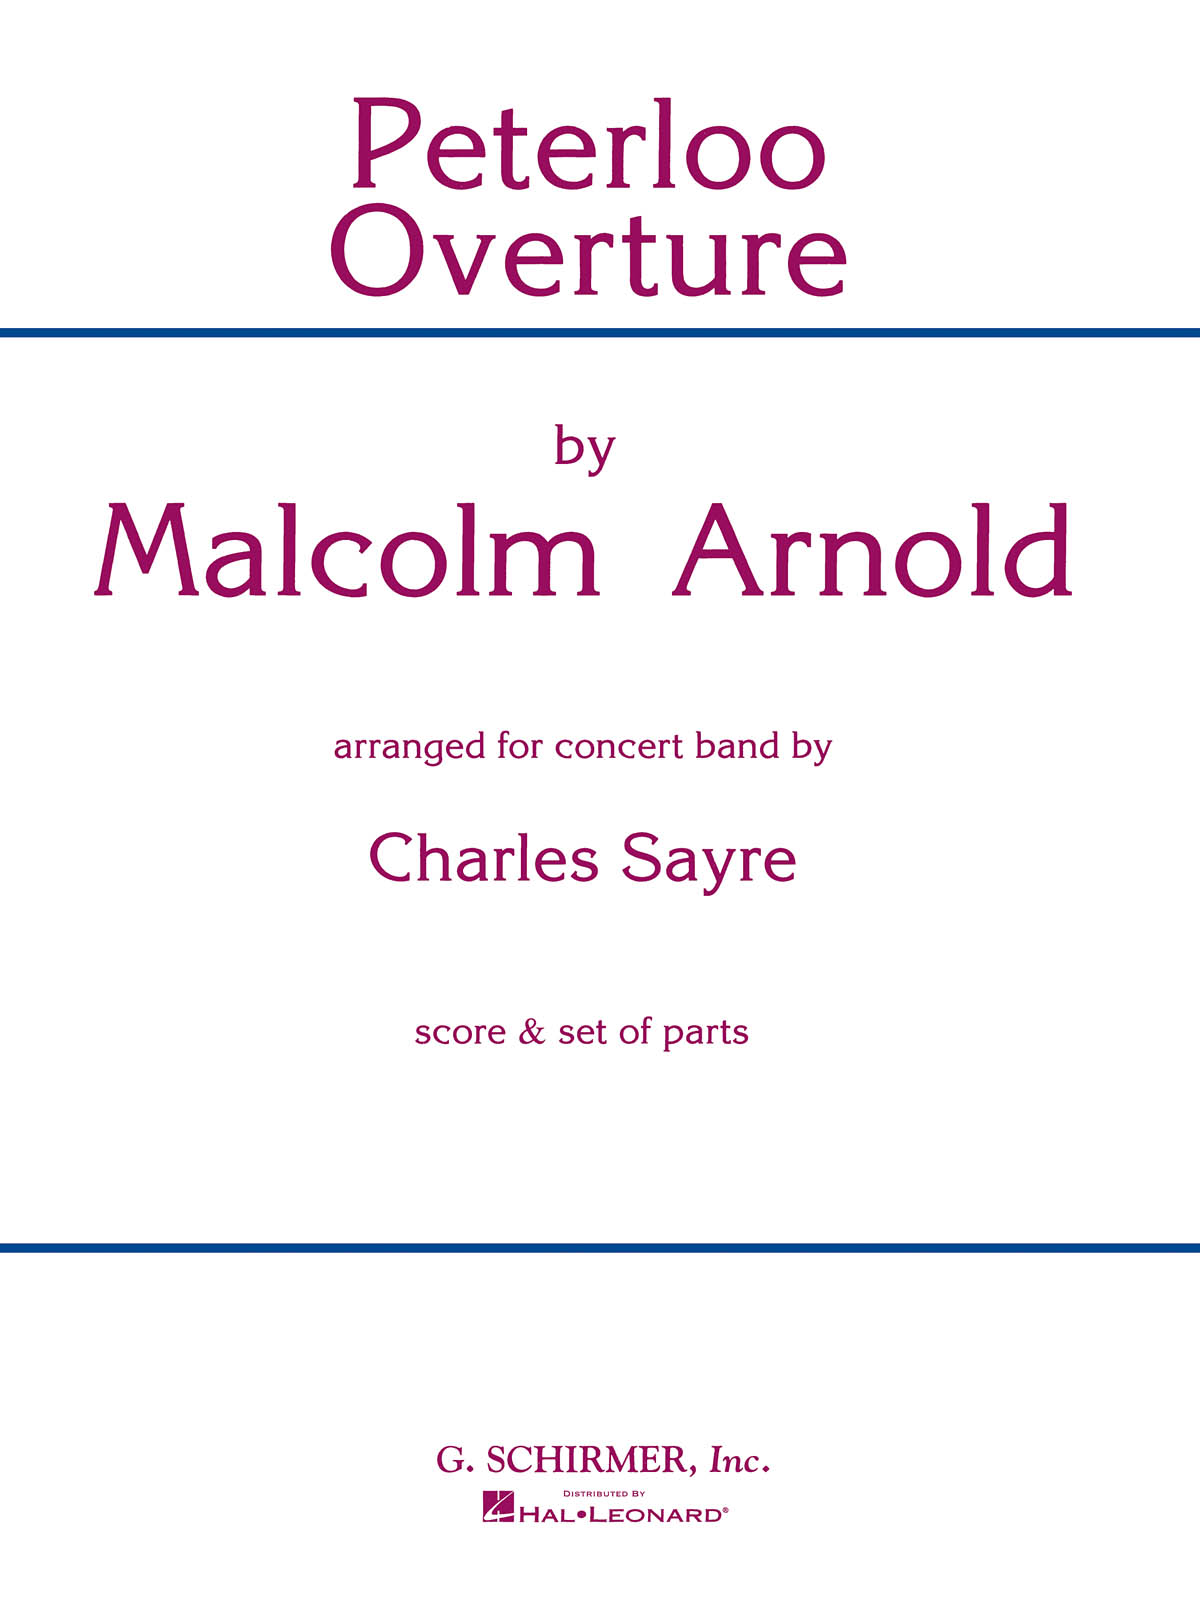 Malcolm Arnold: Peterloo Overture (Harmonie)